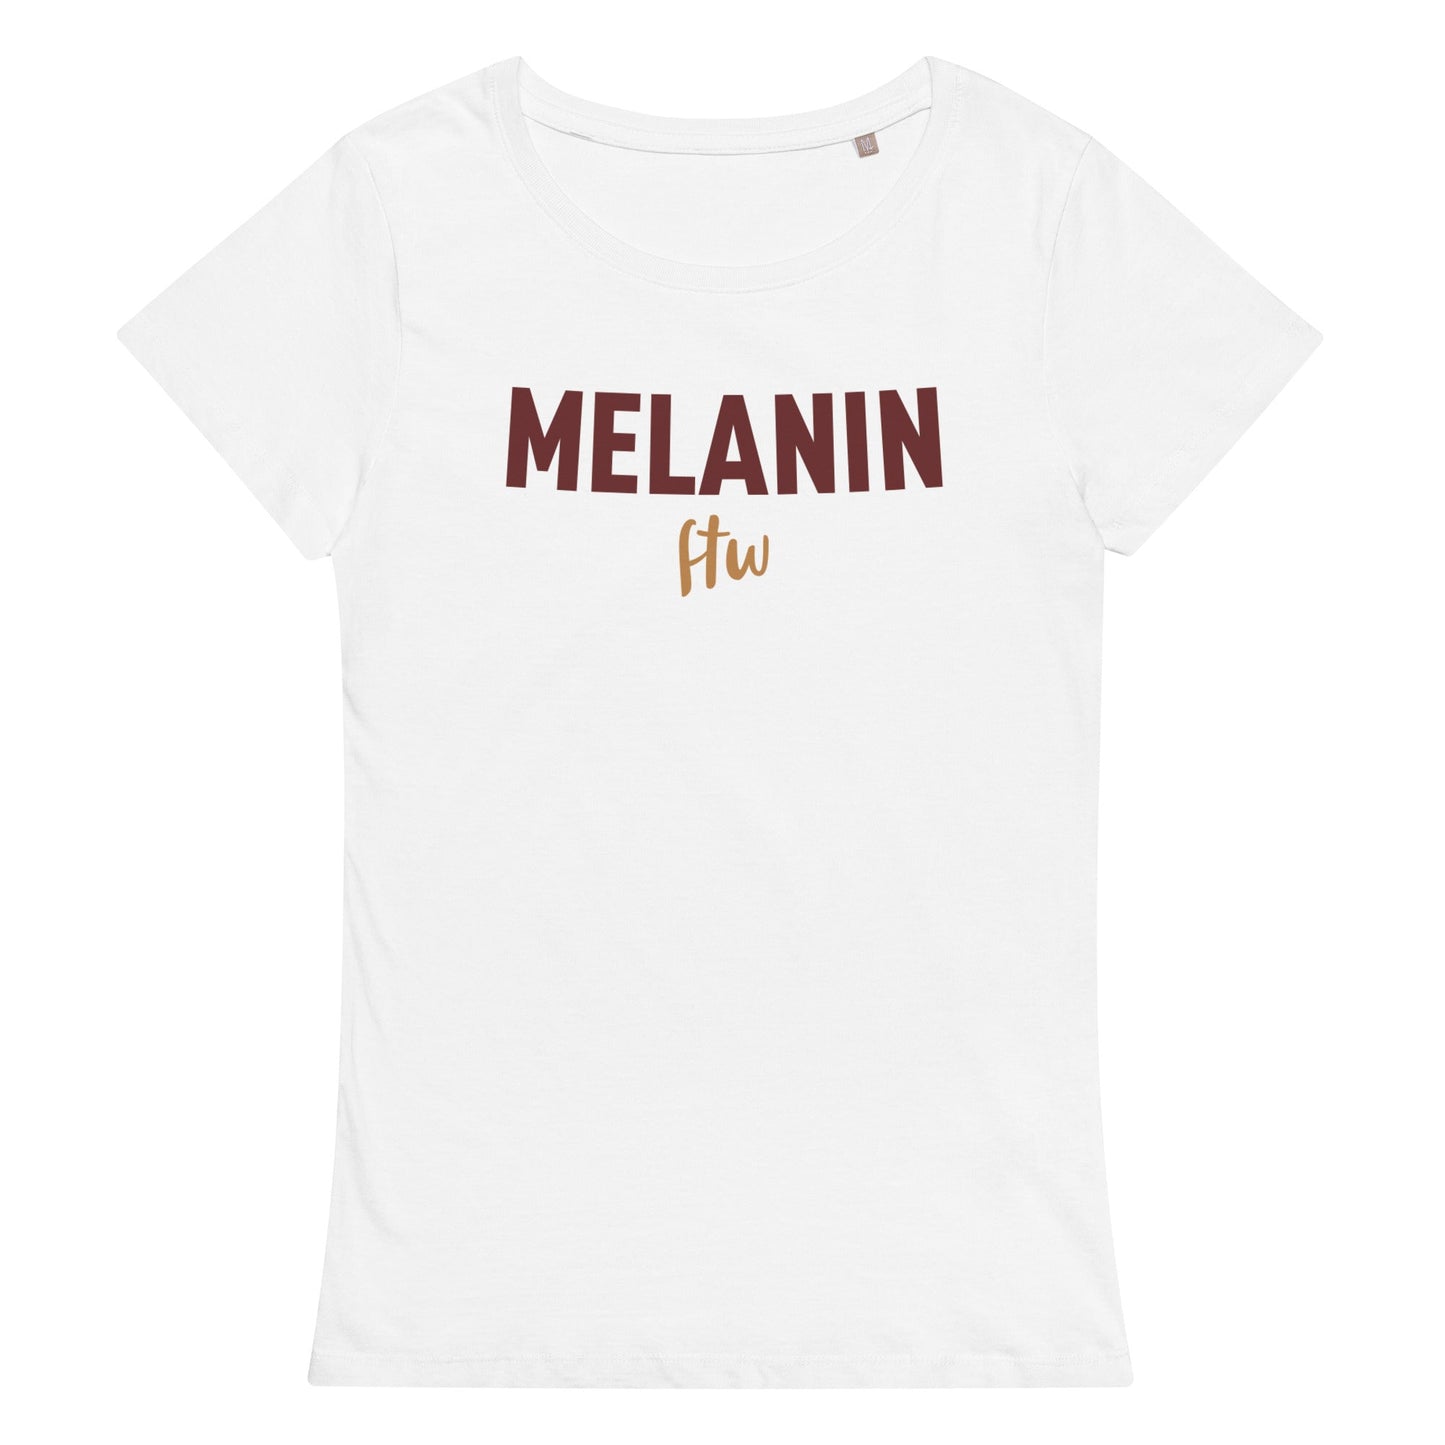 Melanin for the win t-shirt